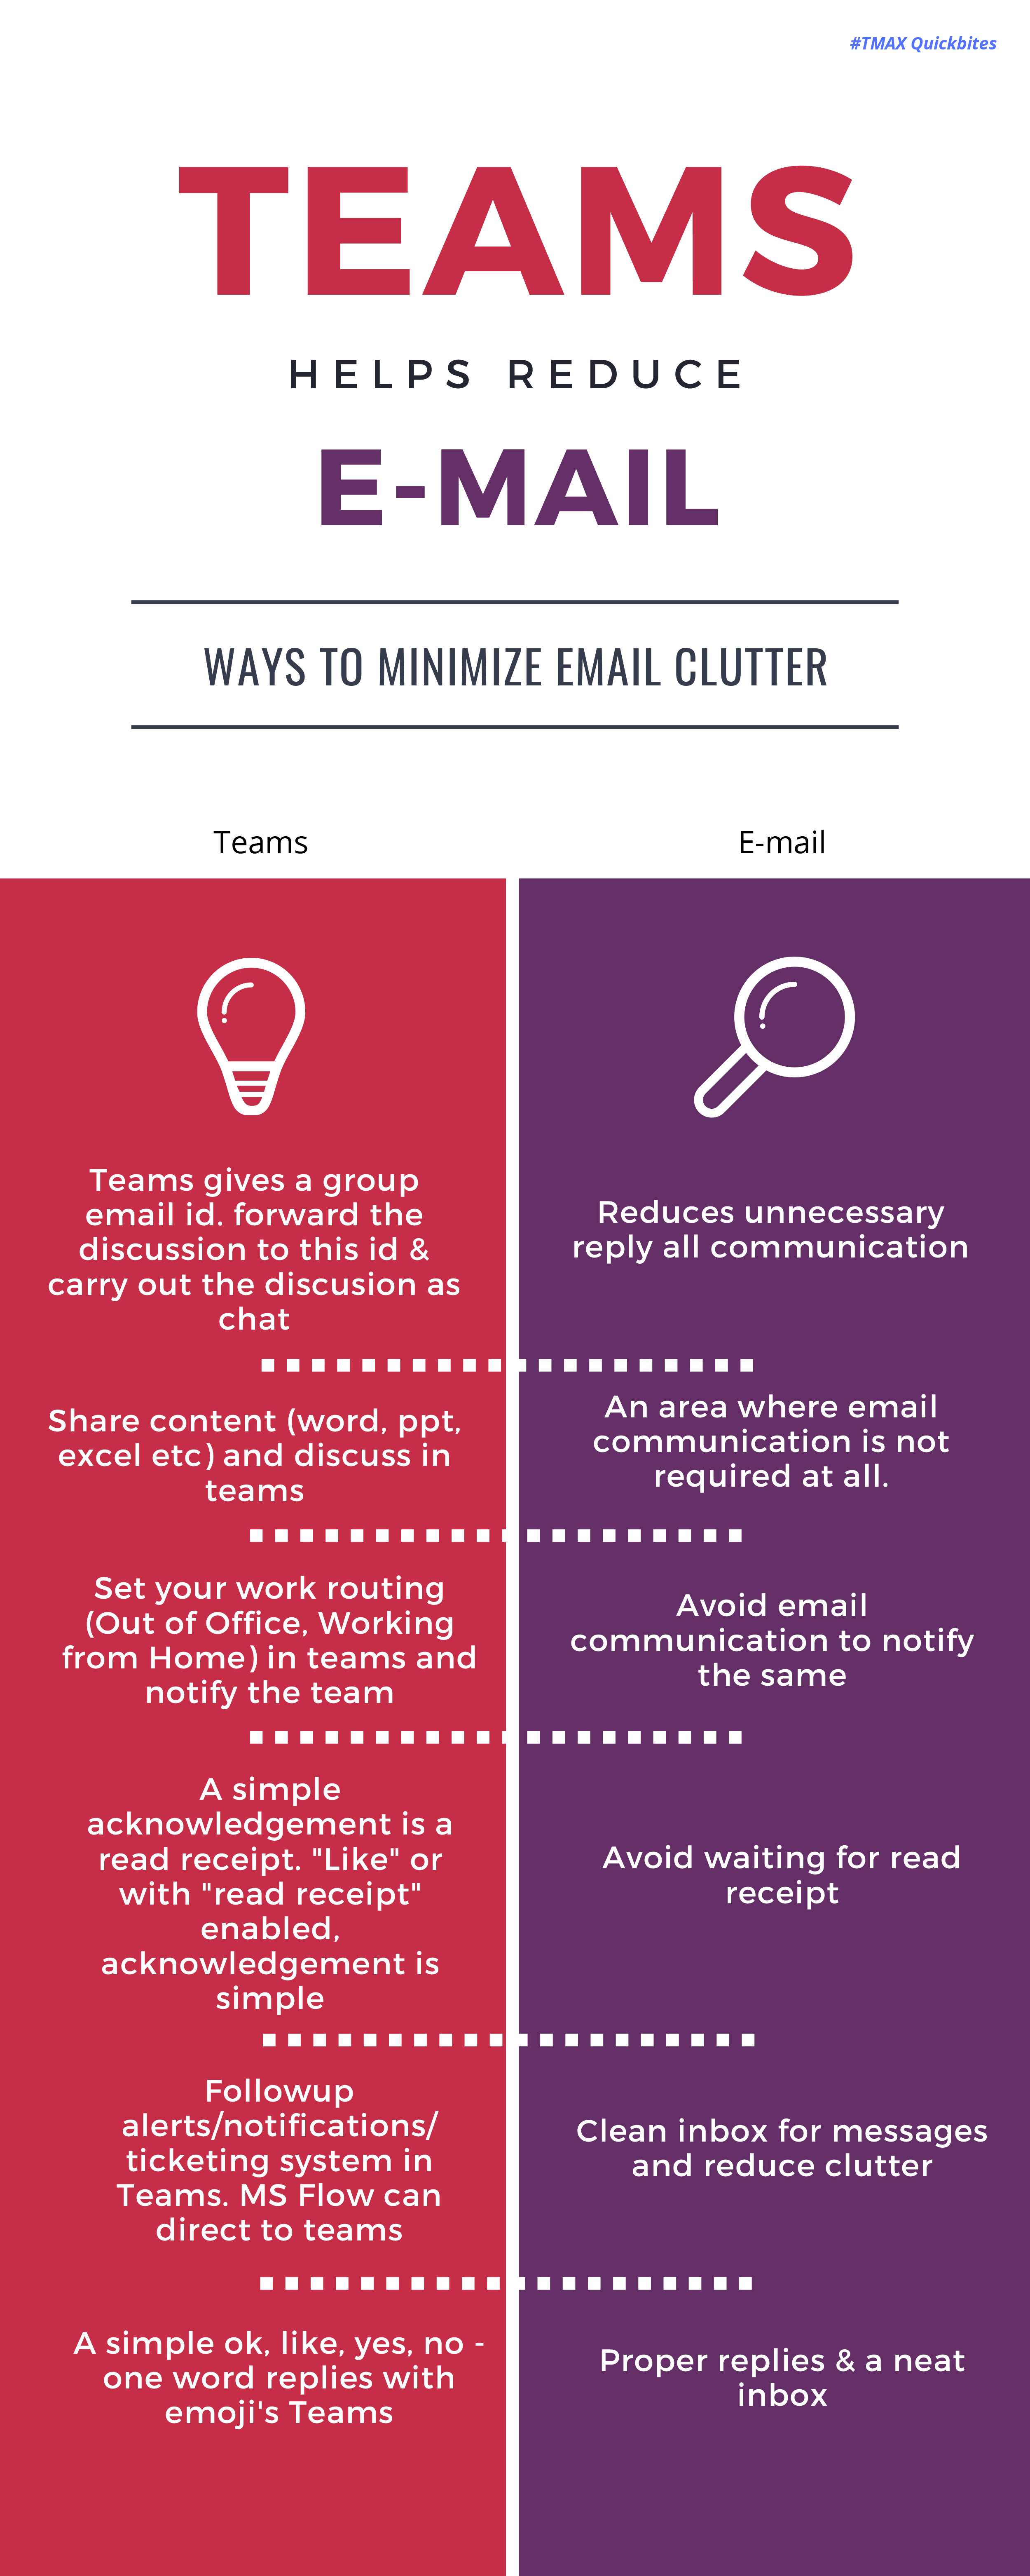 Teams helps reduce email